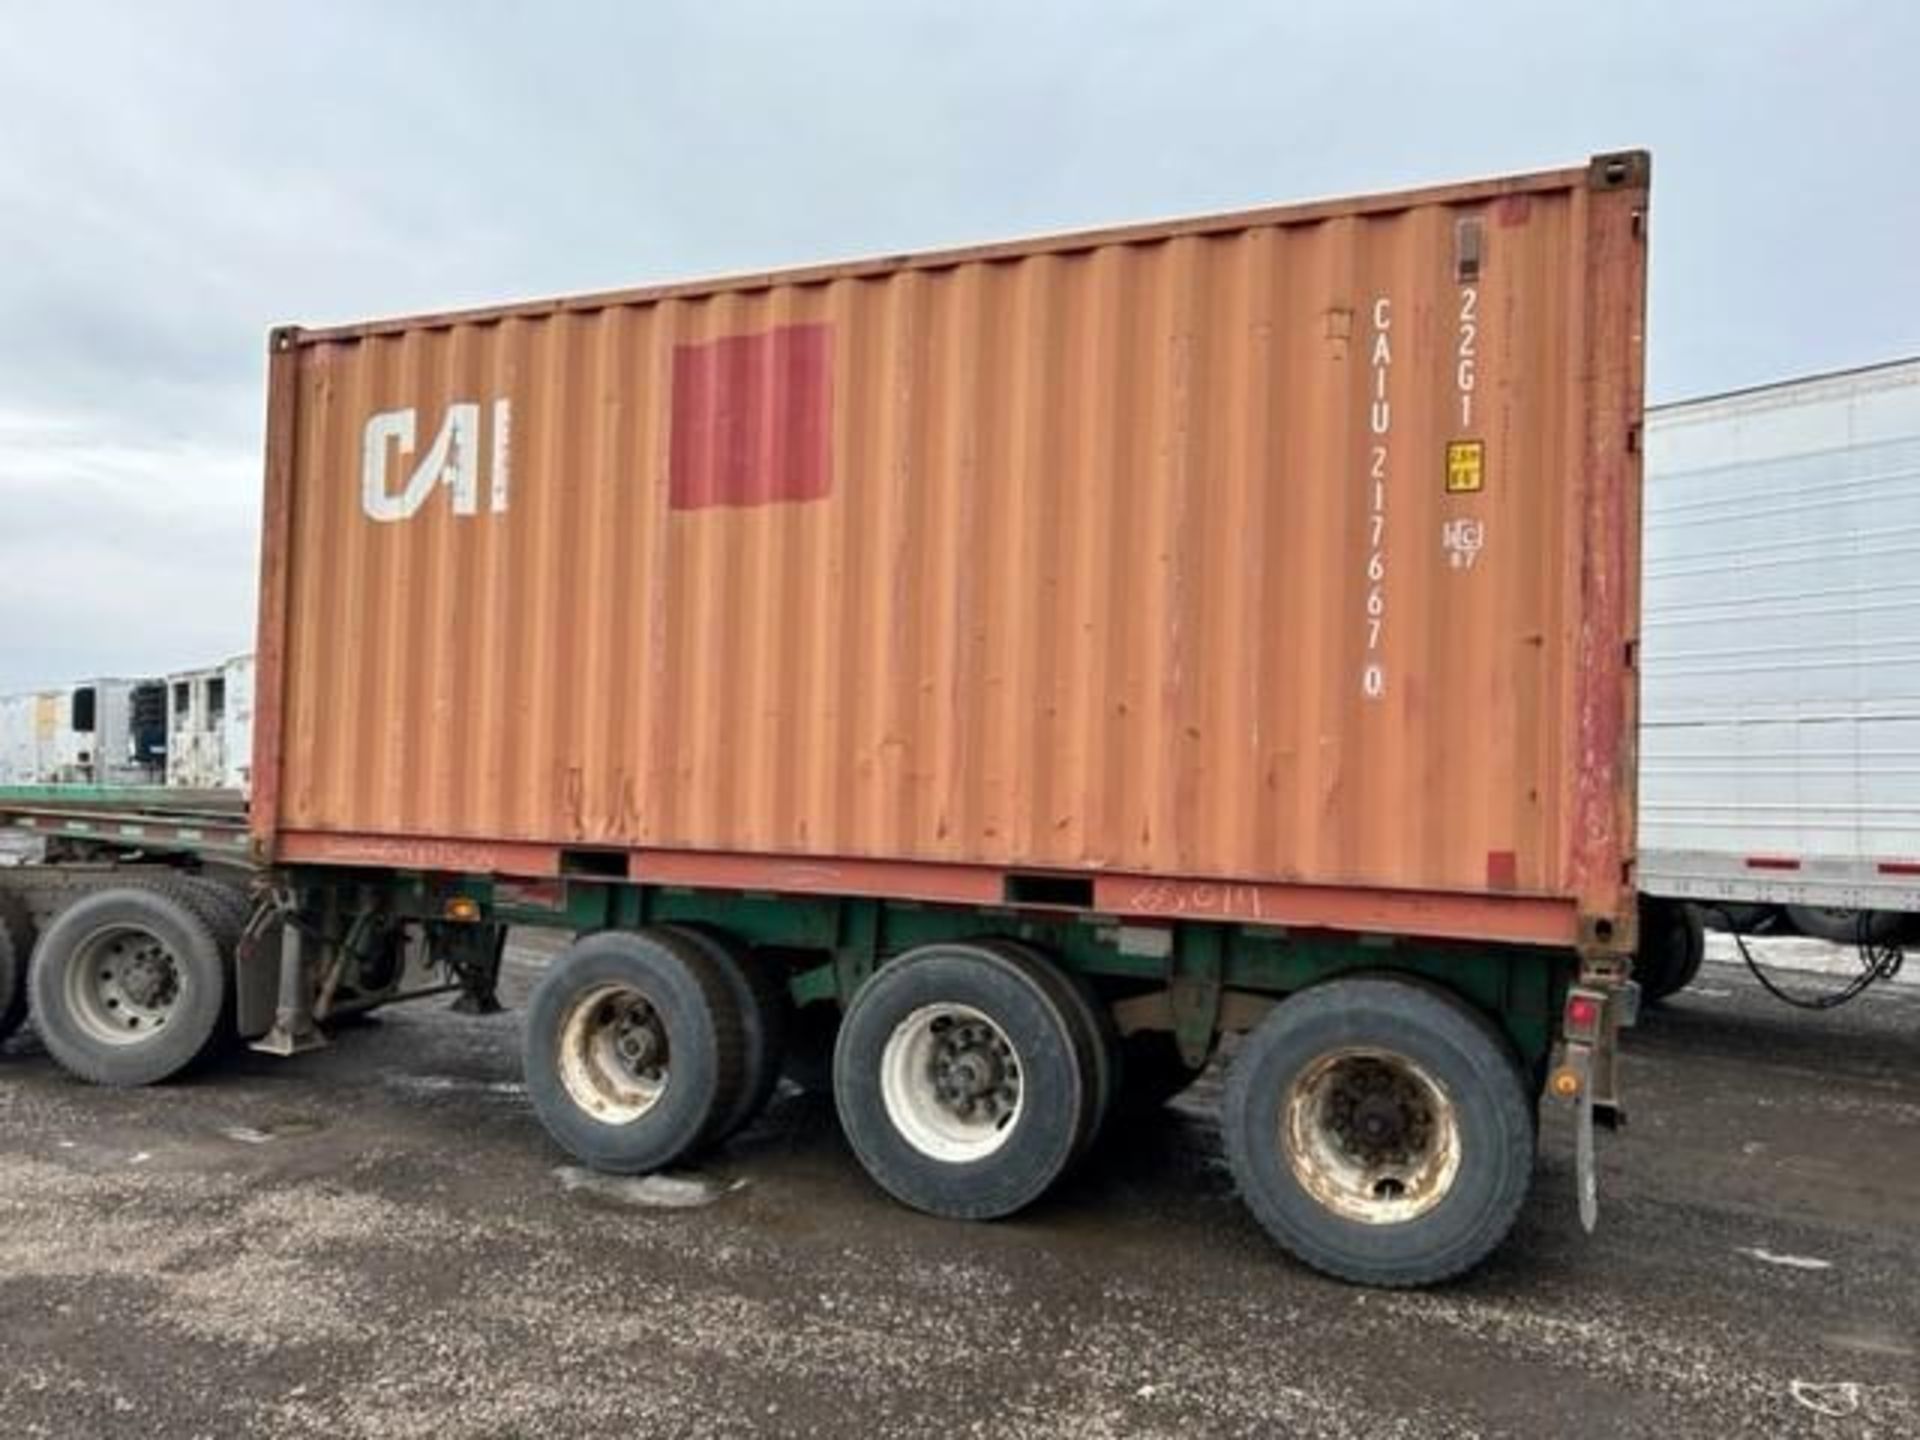 20' Sea Container SN#: CAIU2176670 (Located in S.E. Calgary)